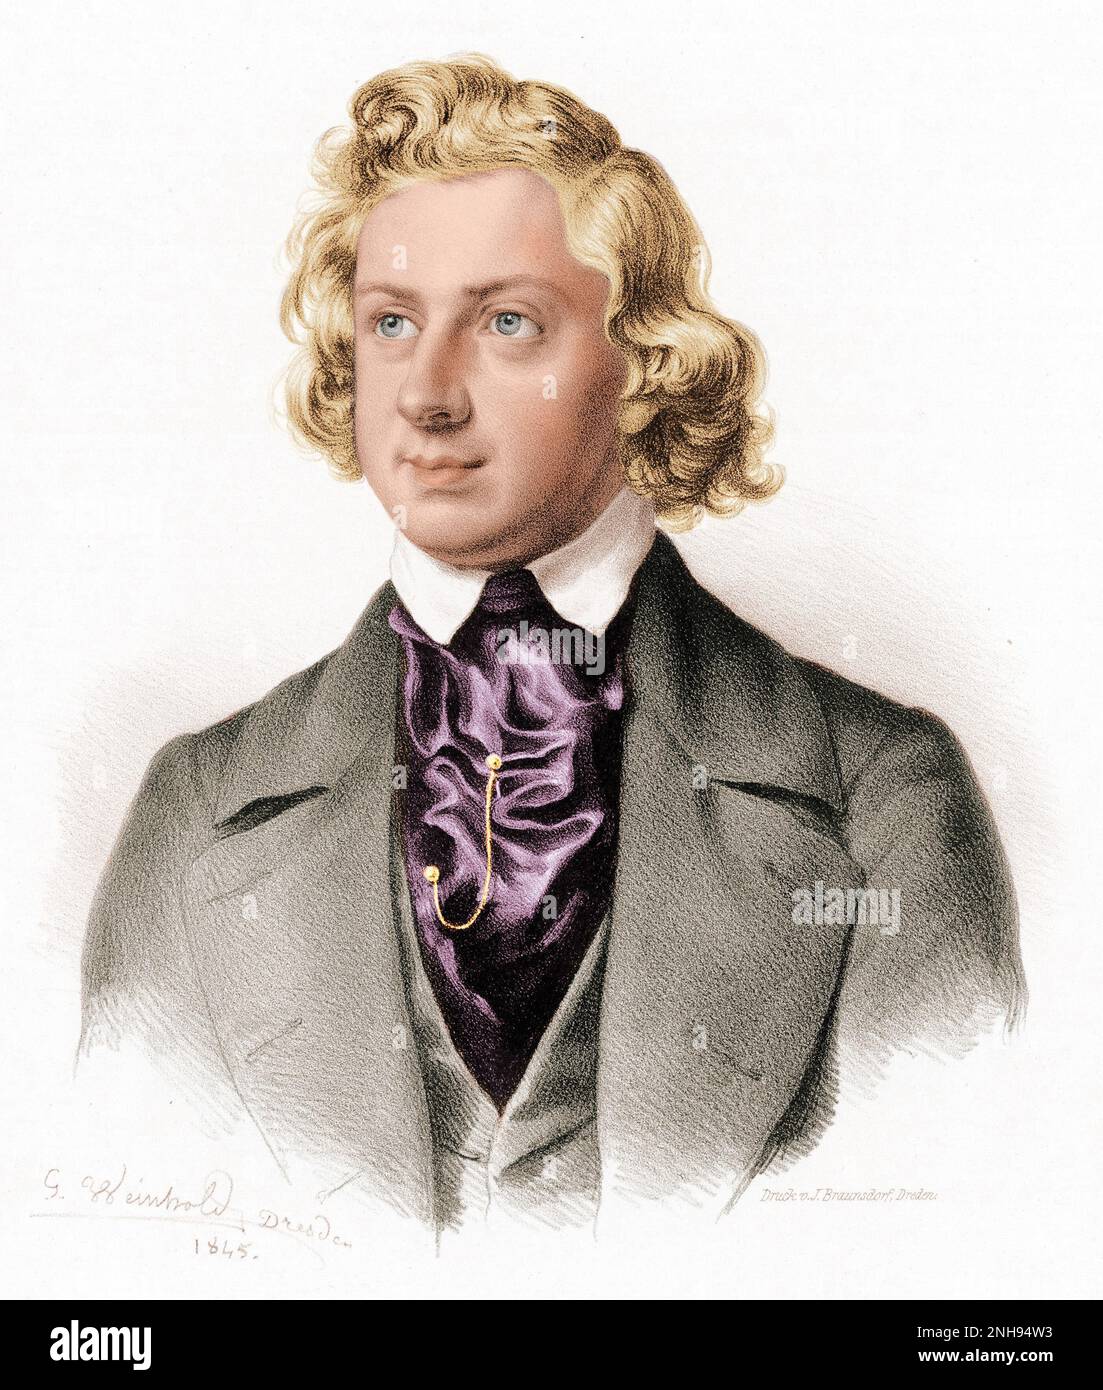 Niels Wilhelm Gade (1817-1890) est un compositeur, chef d'orchestre, violoniste et organiste danois. Gravure par Johann Georg Weinhold (1813-1880) de 1845. Colorisé. Banque D'Images